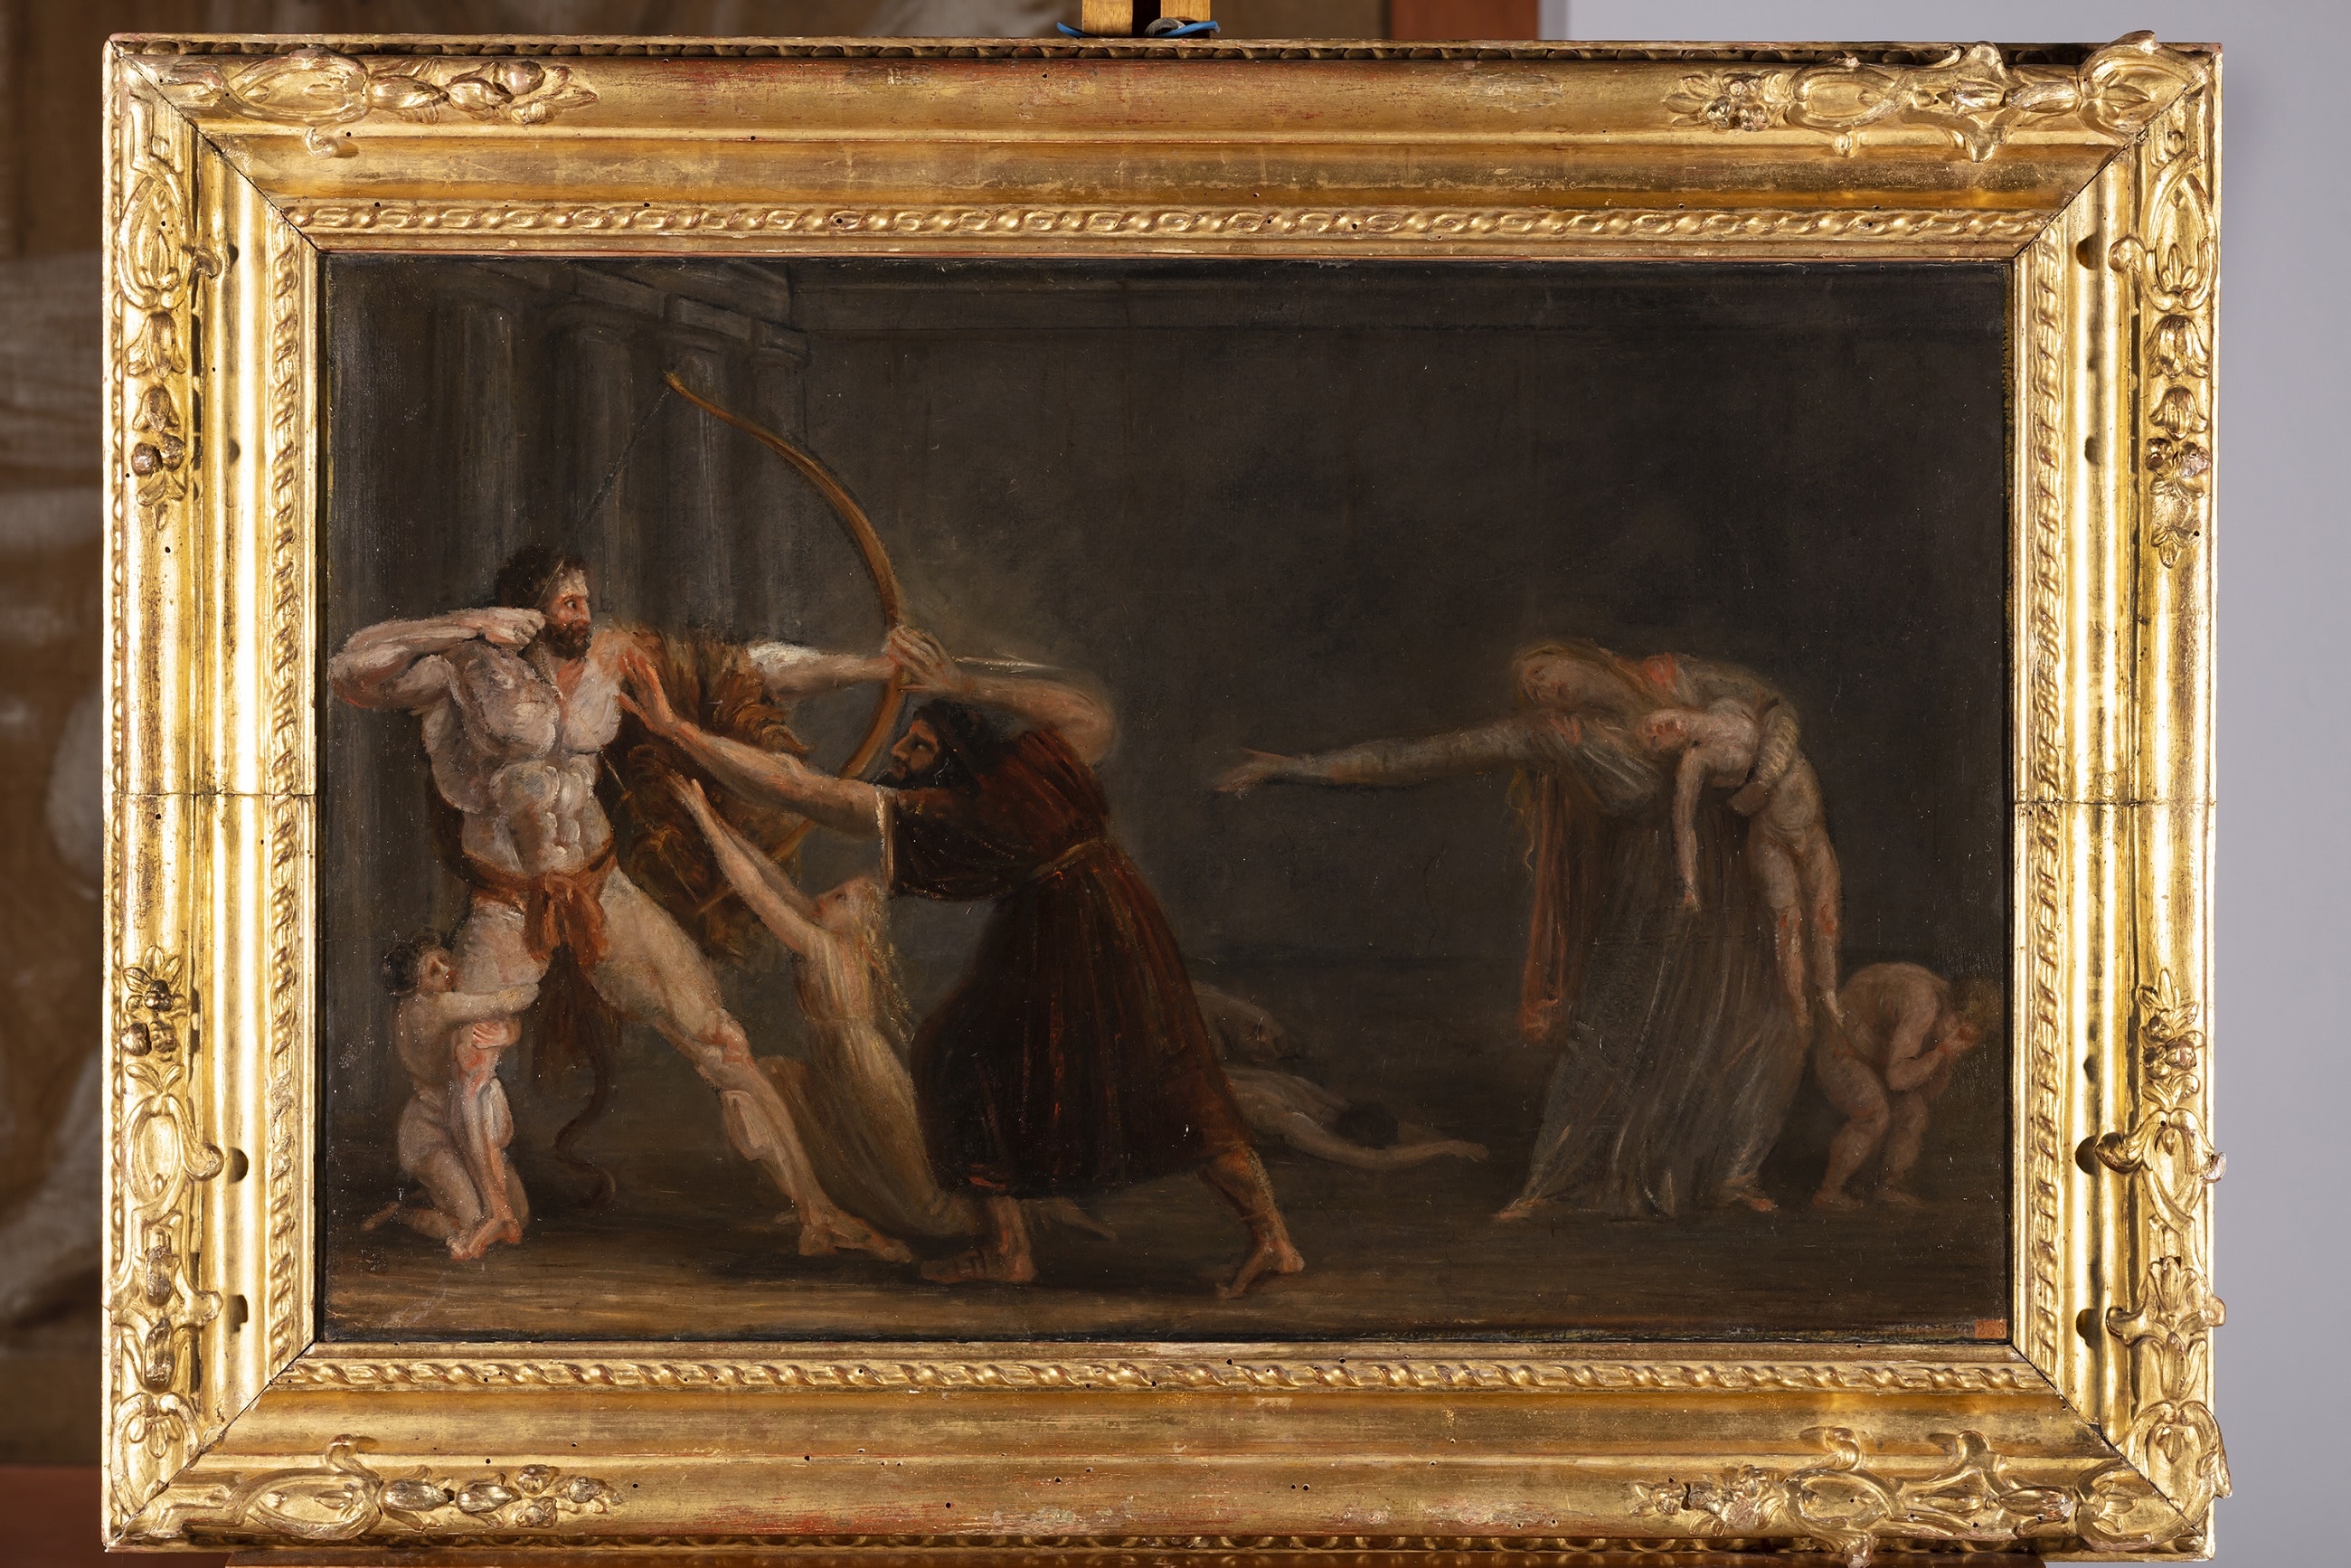 Antonio Canova (1757 – 1822), Ercole che saetta i figli, 1798-1799, Olio su carta applicata su tela, 42x65,55cm., Bassano del Grappa, Museo Civico